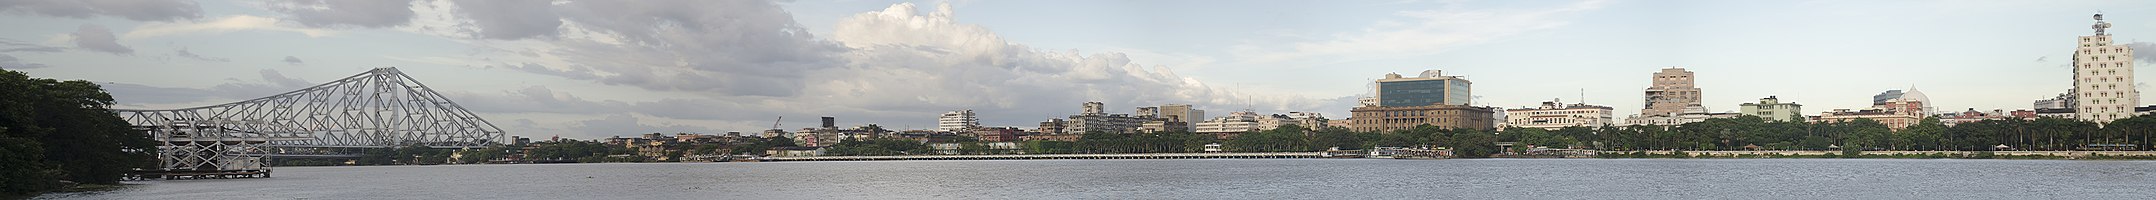 Kolkata, in India